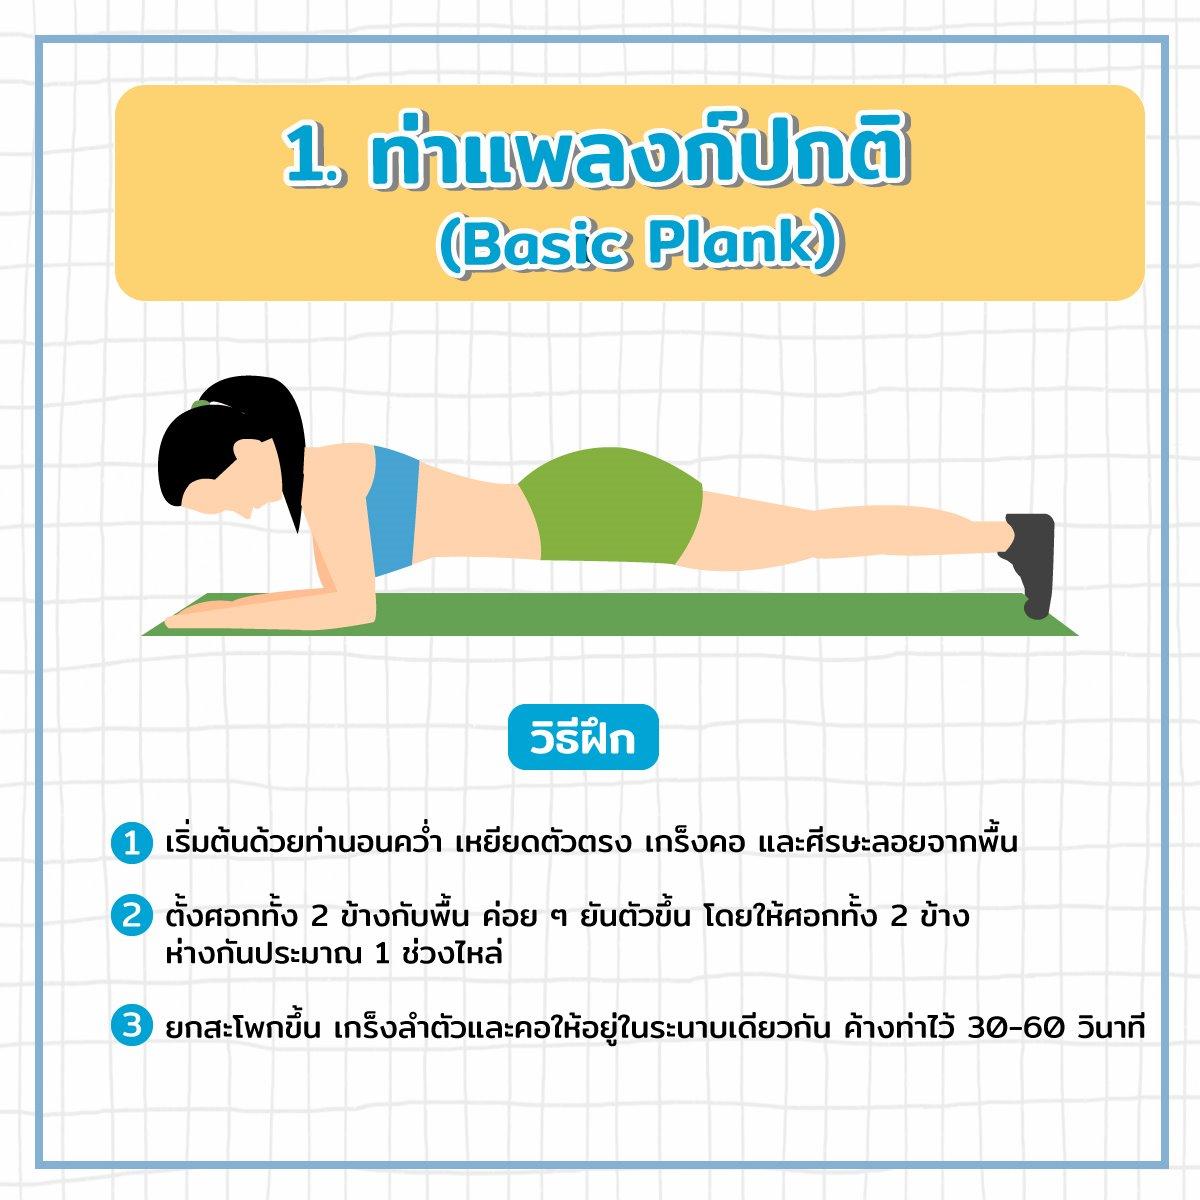 ท่าแพลงก์ปกติ (Basic Plank)